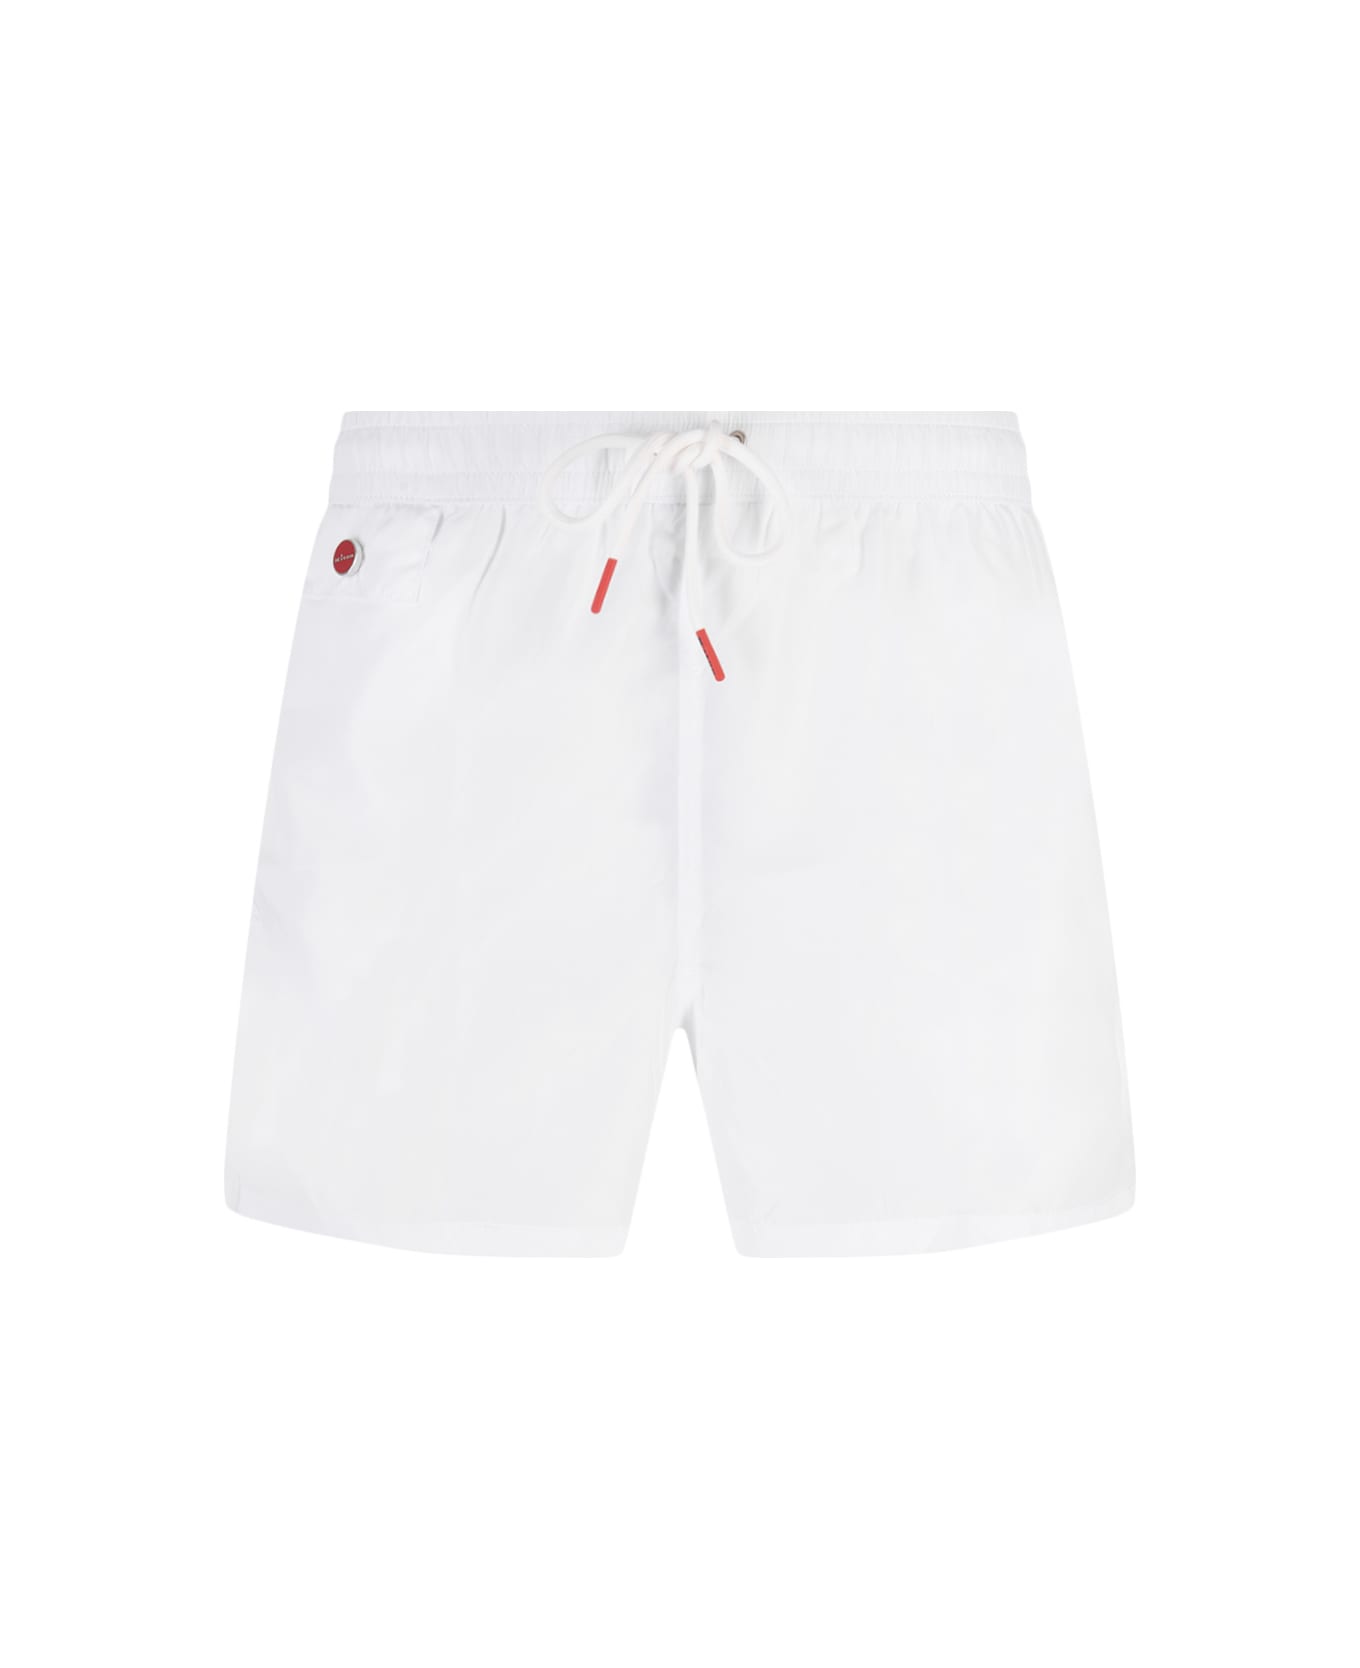 Kiton White Swim Shorts - White スイムトランクス